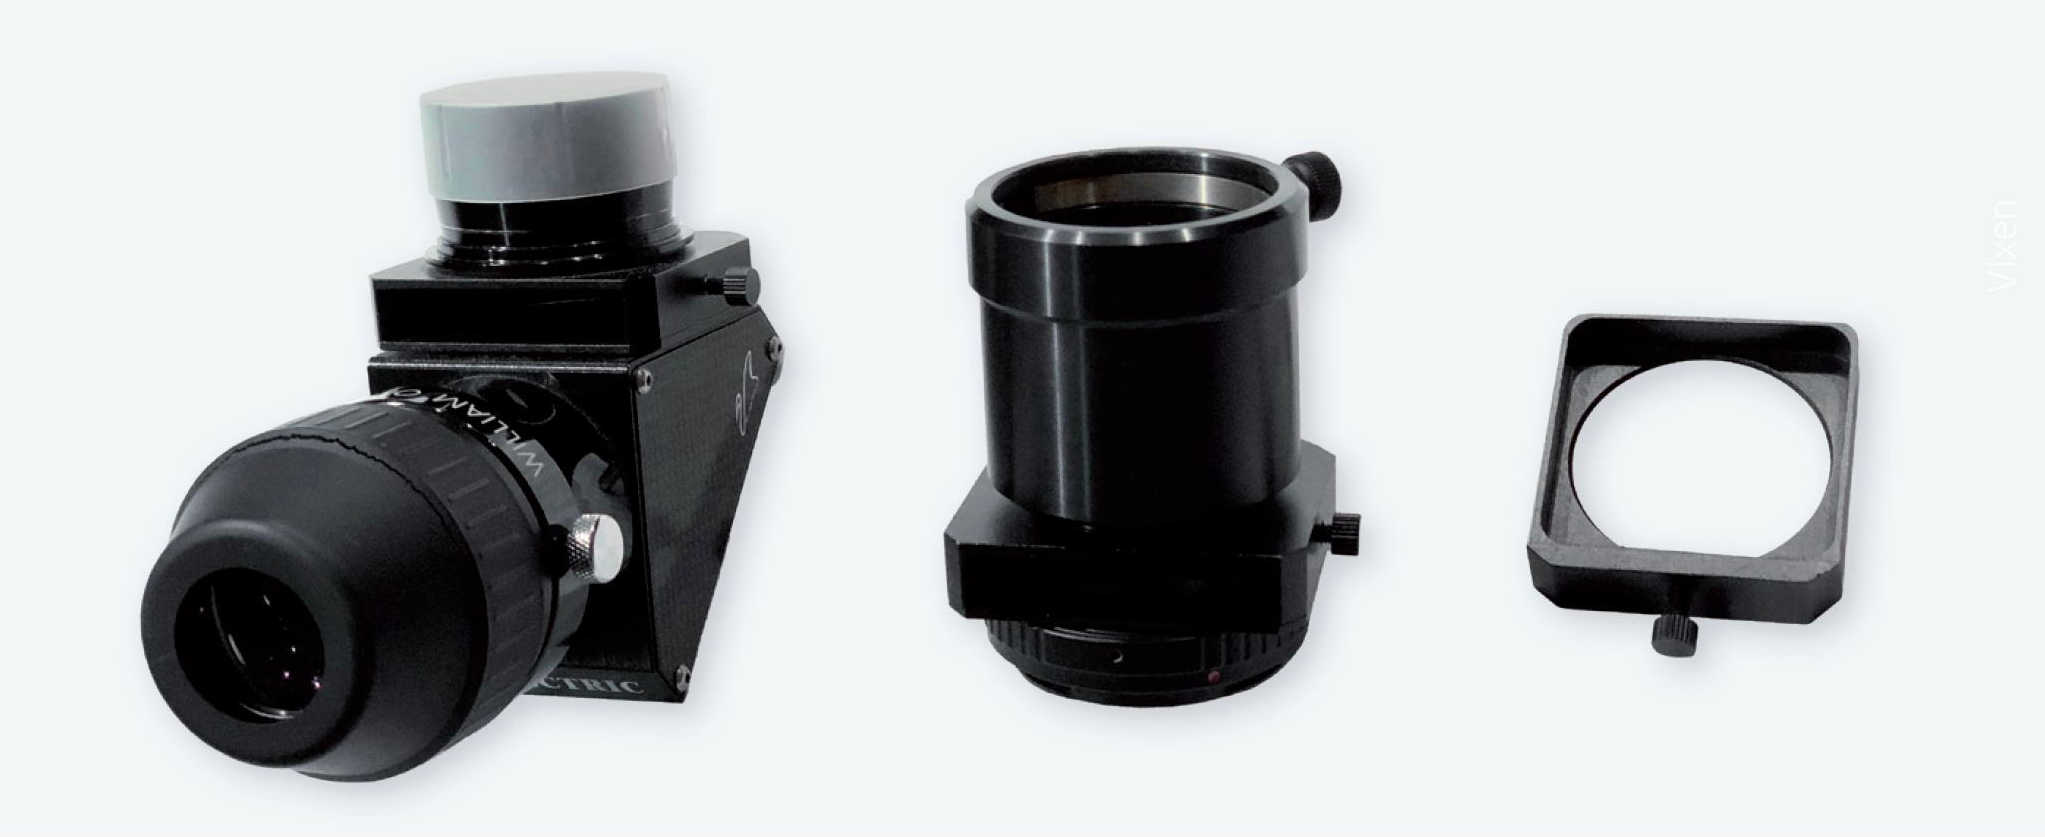 Szuflady filtrowe zamocowane na nasadce pryzmatycznej i na adapterze Canon EOS (radełkowane śrubki służą do mocowania szuflady), oraz faktyczna szuflada na filtr (tutaj radełkowana śrubka pełni rolę uchwytu szuflady). P. Oden